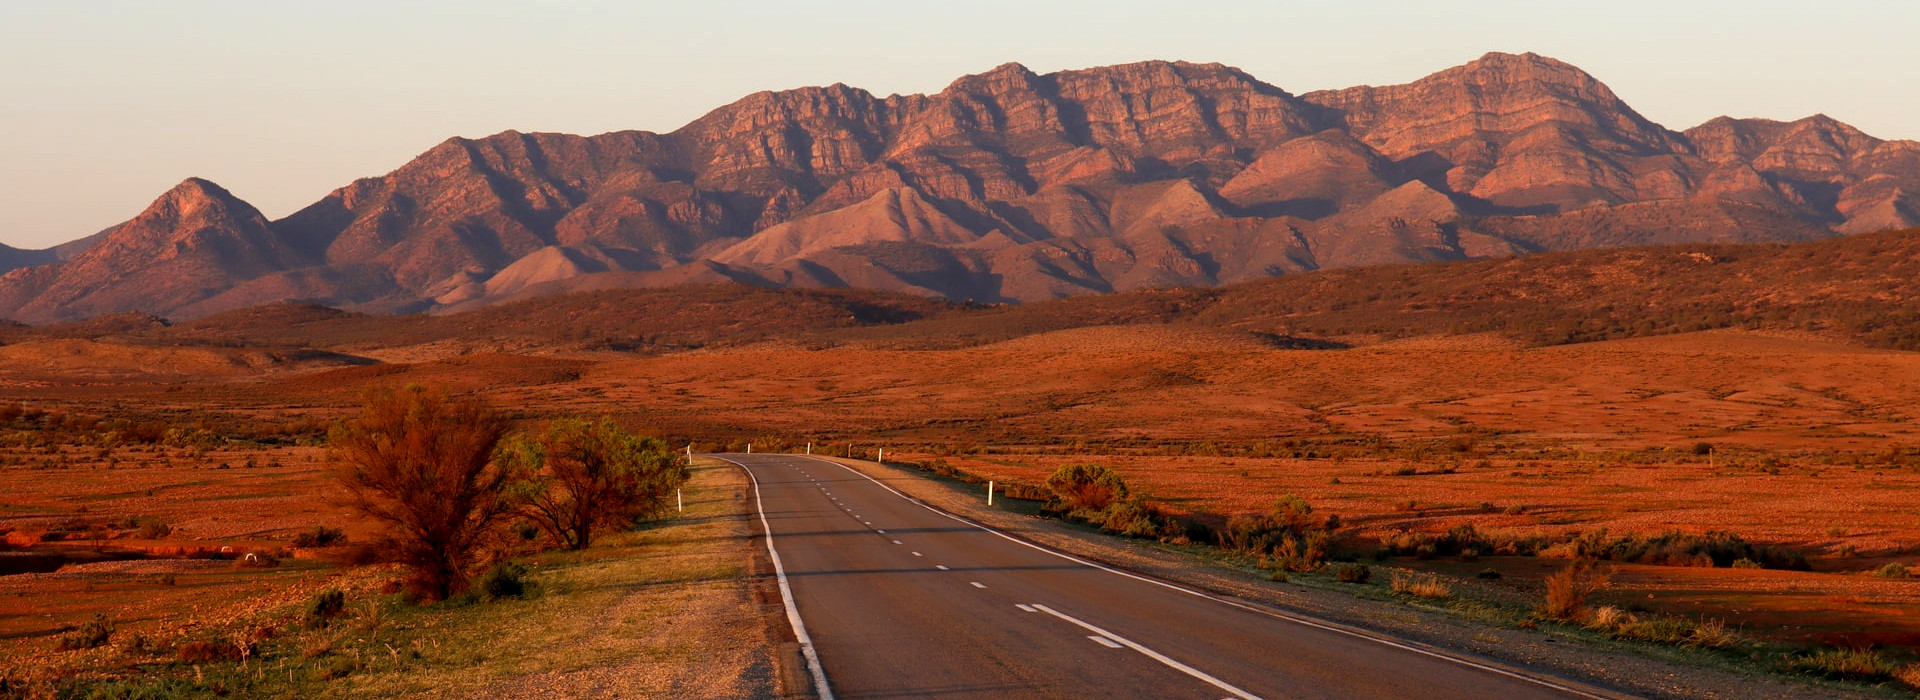 Flinders Ranges Travel Guide